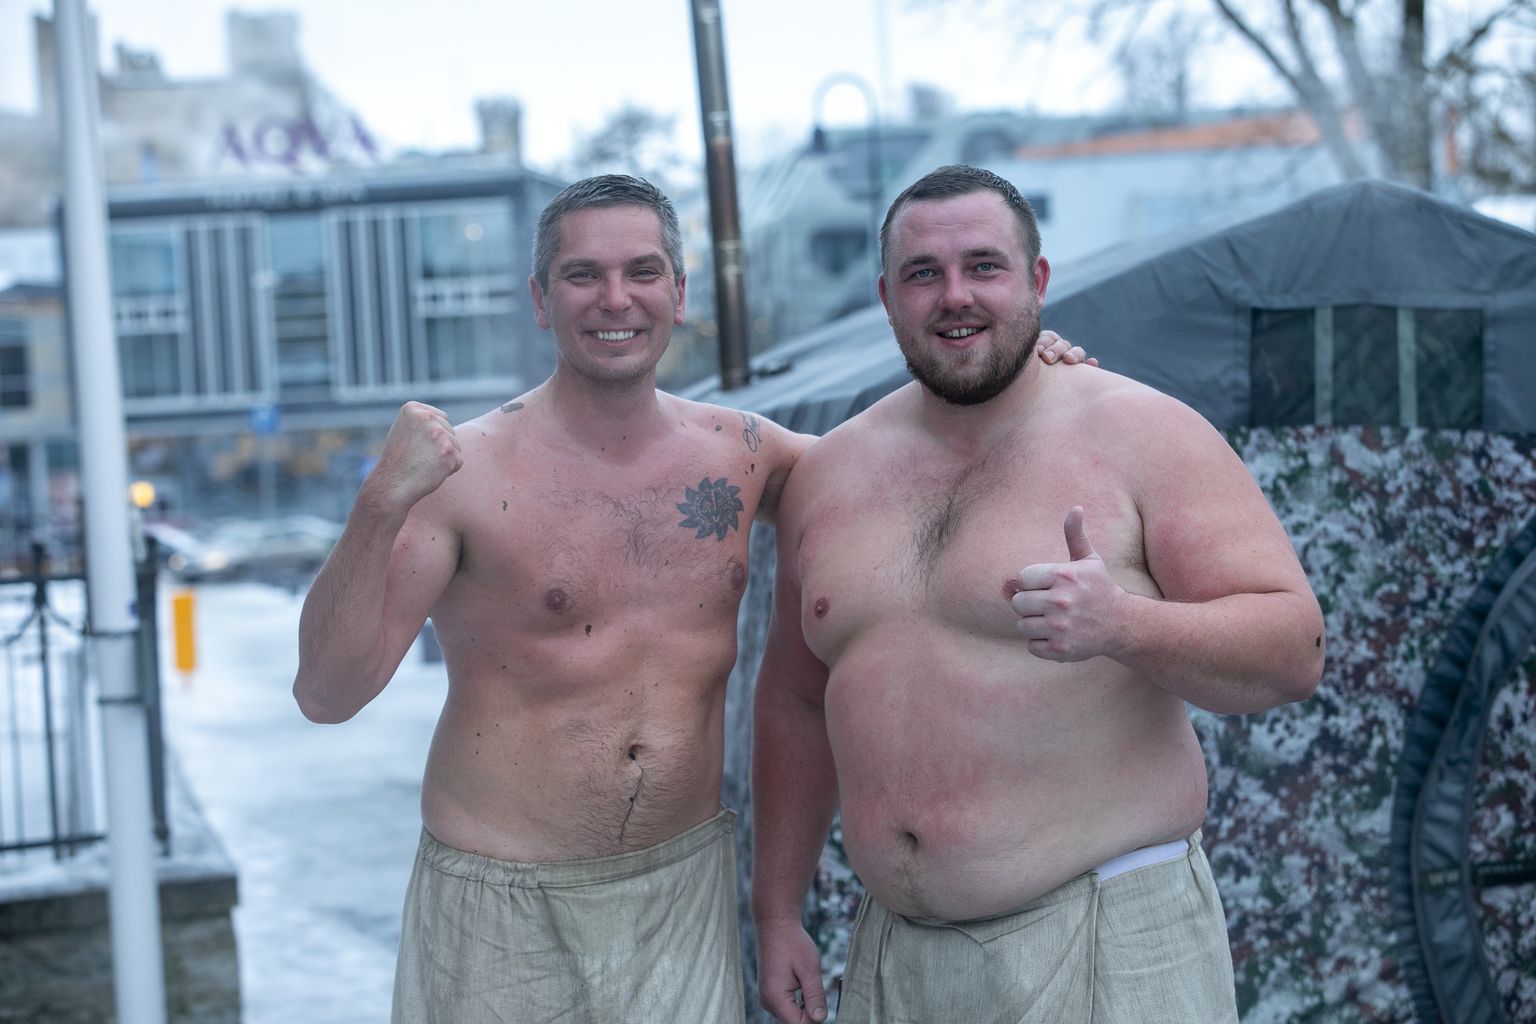 Организатор Нарвского банного фестиваля Марко Торм вместе со своим коллегой по Рийгикогу Баруто.